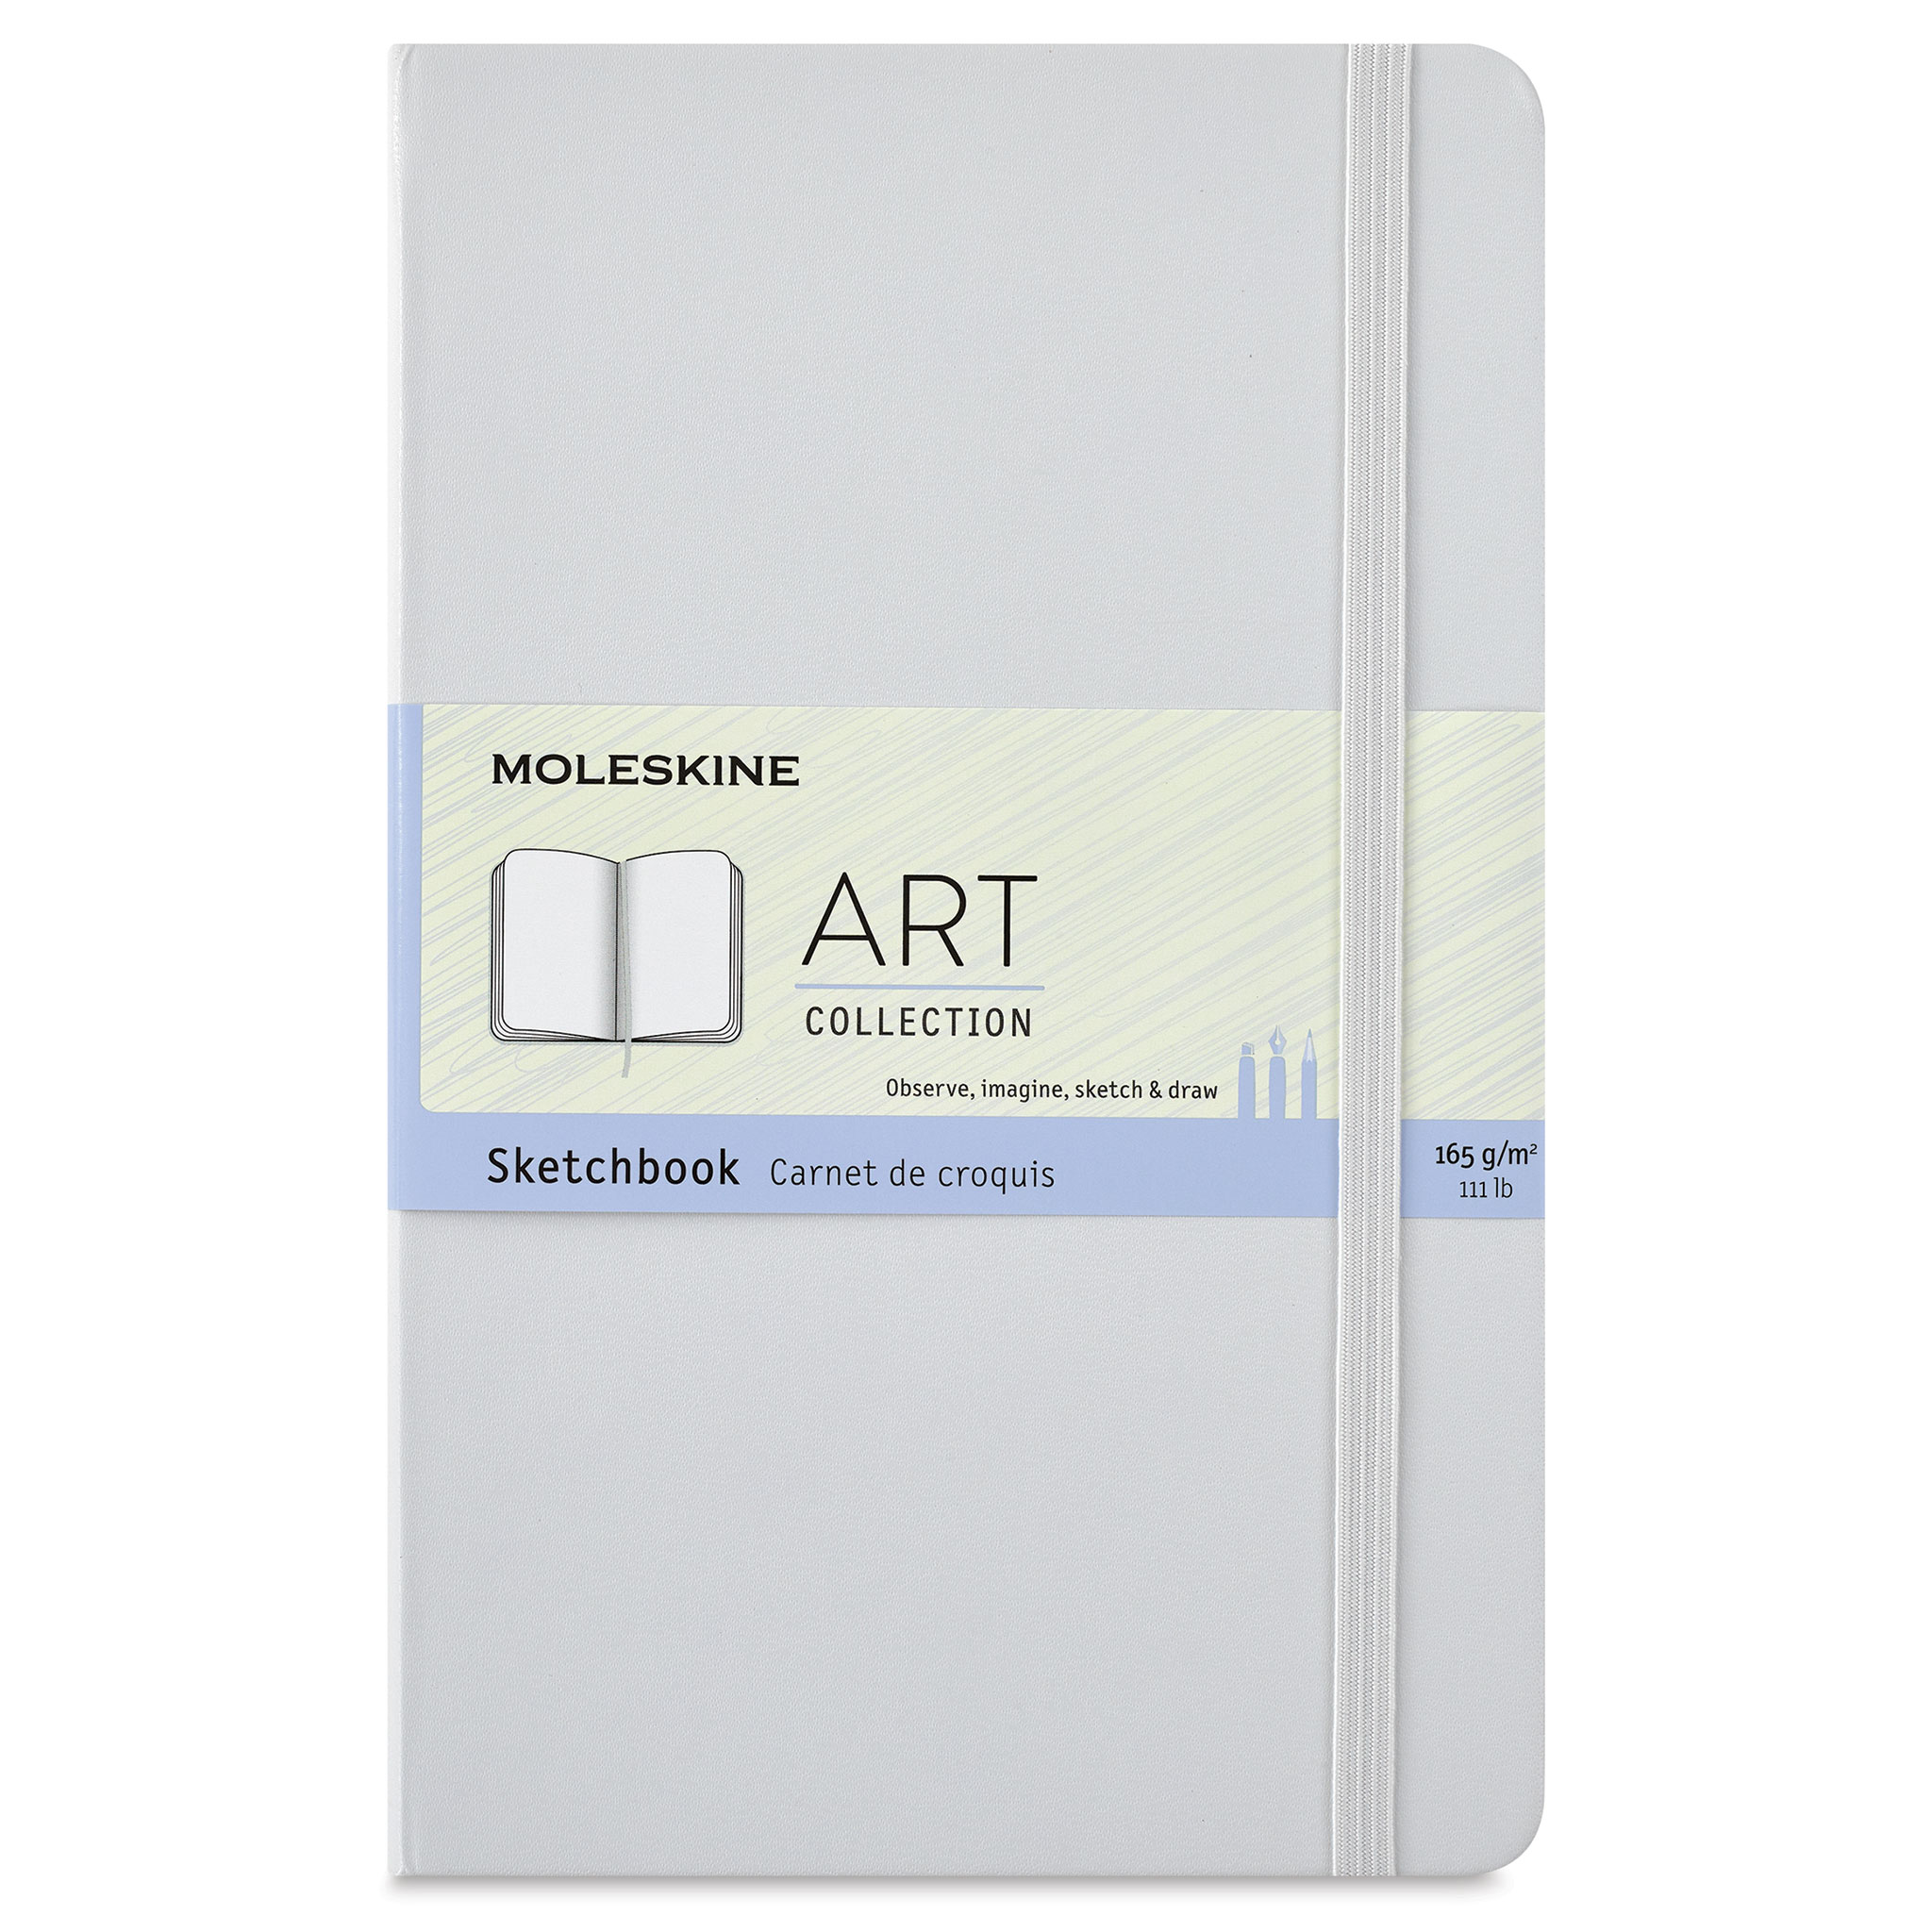 Moleskine Art Collection Sketchbooks